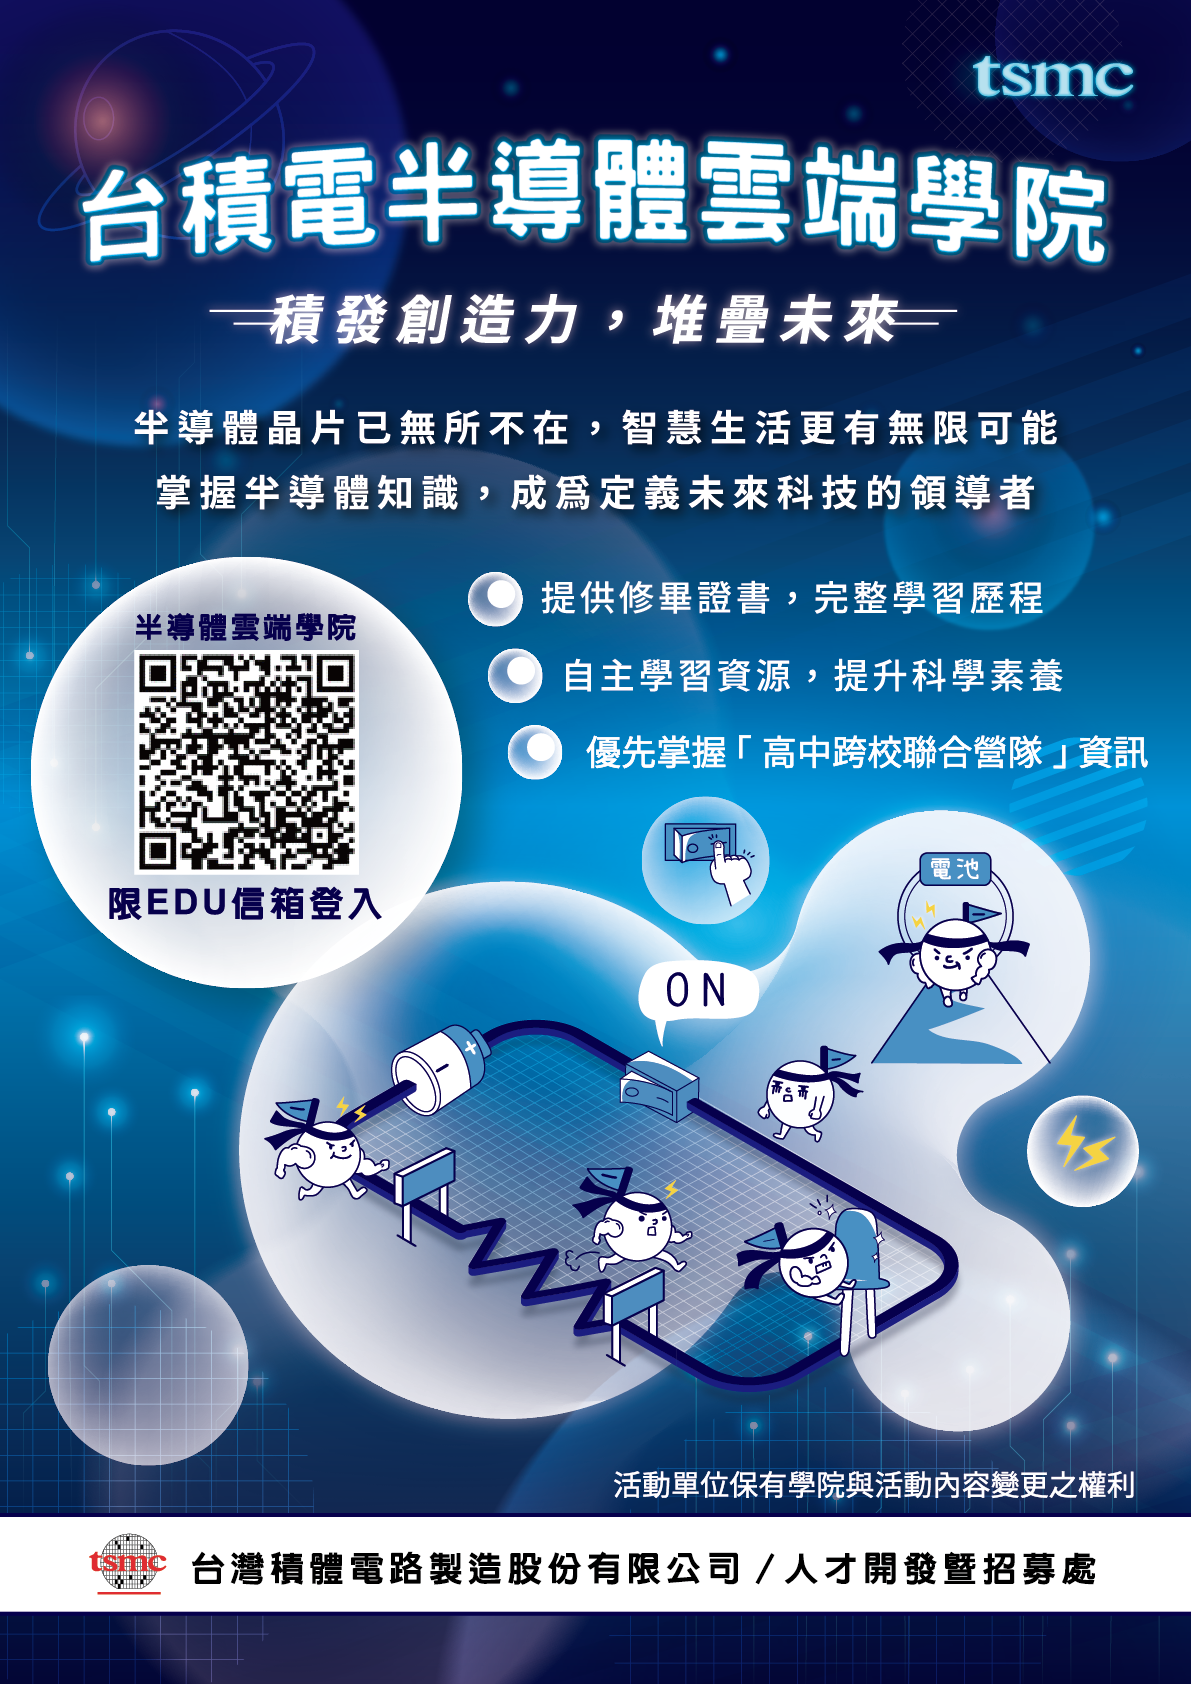 台灣積體電路製造股份有限公司（以下簡稱台積電）辦理之「台積電半導體雲端學院」宣傳